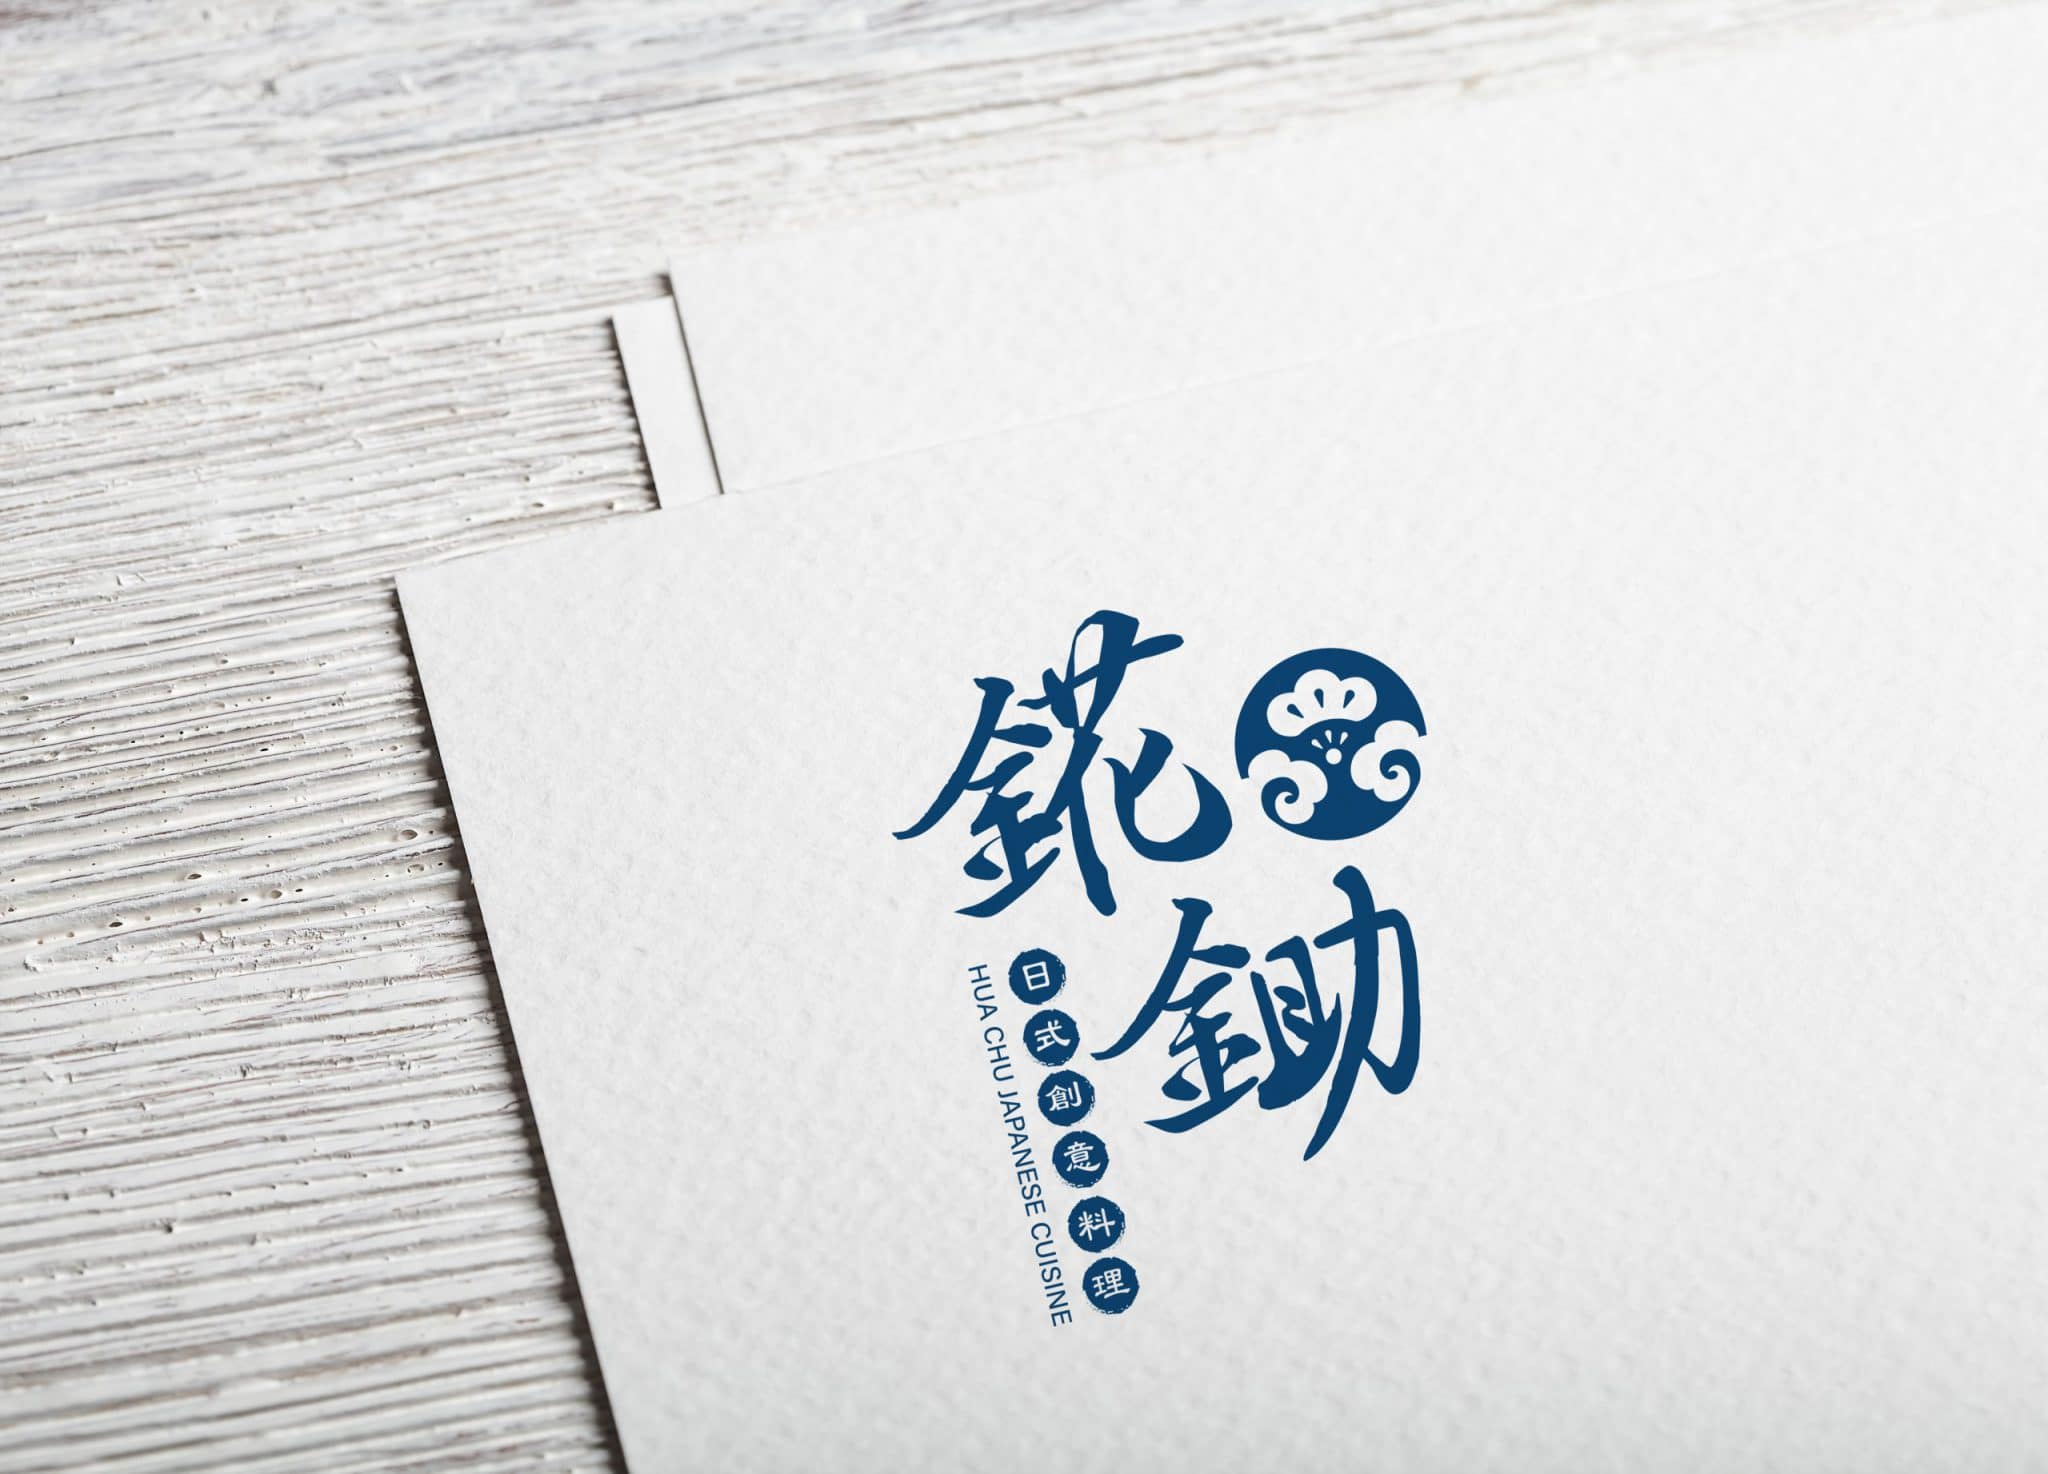 錵鋤日式創意料理 LOGO設計 形象設計 品牌設計 商標設計